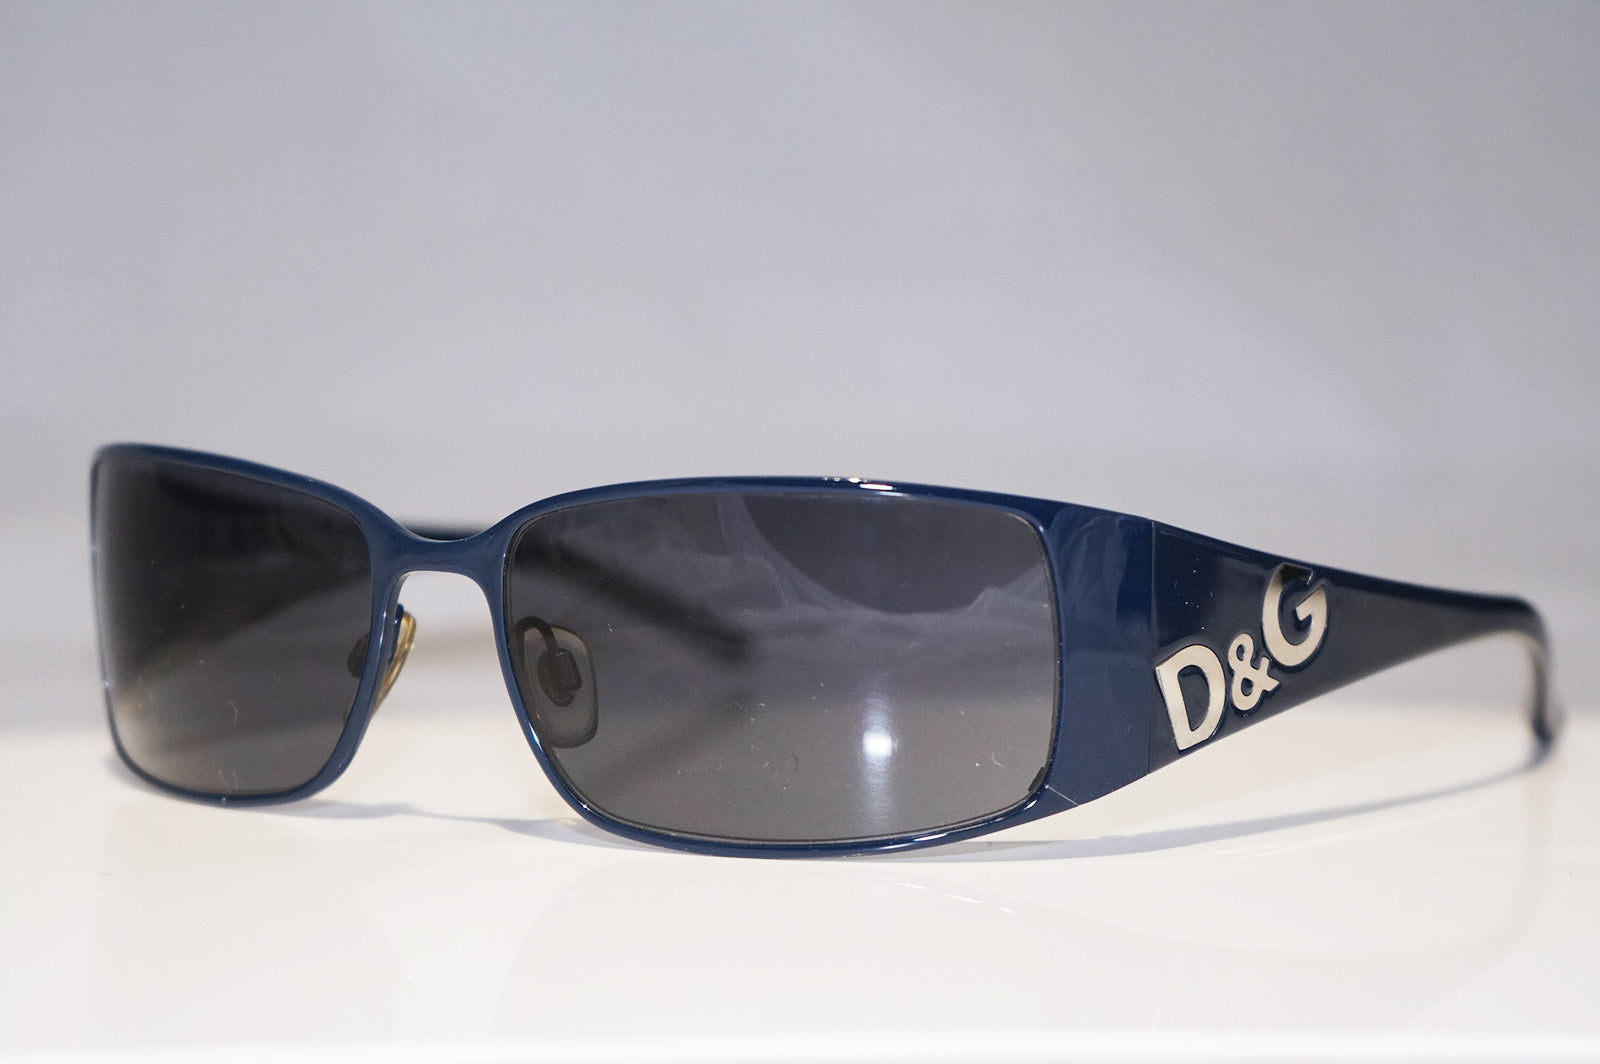 d&g 6010 sunglasses